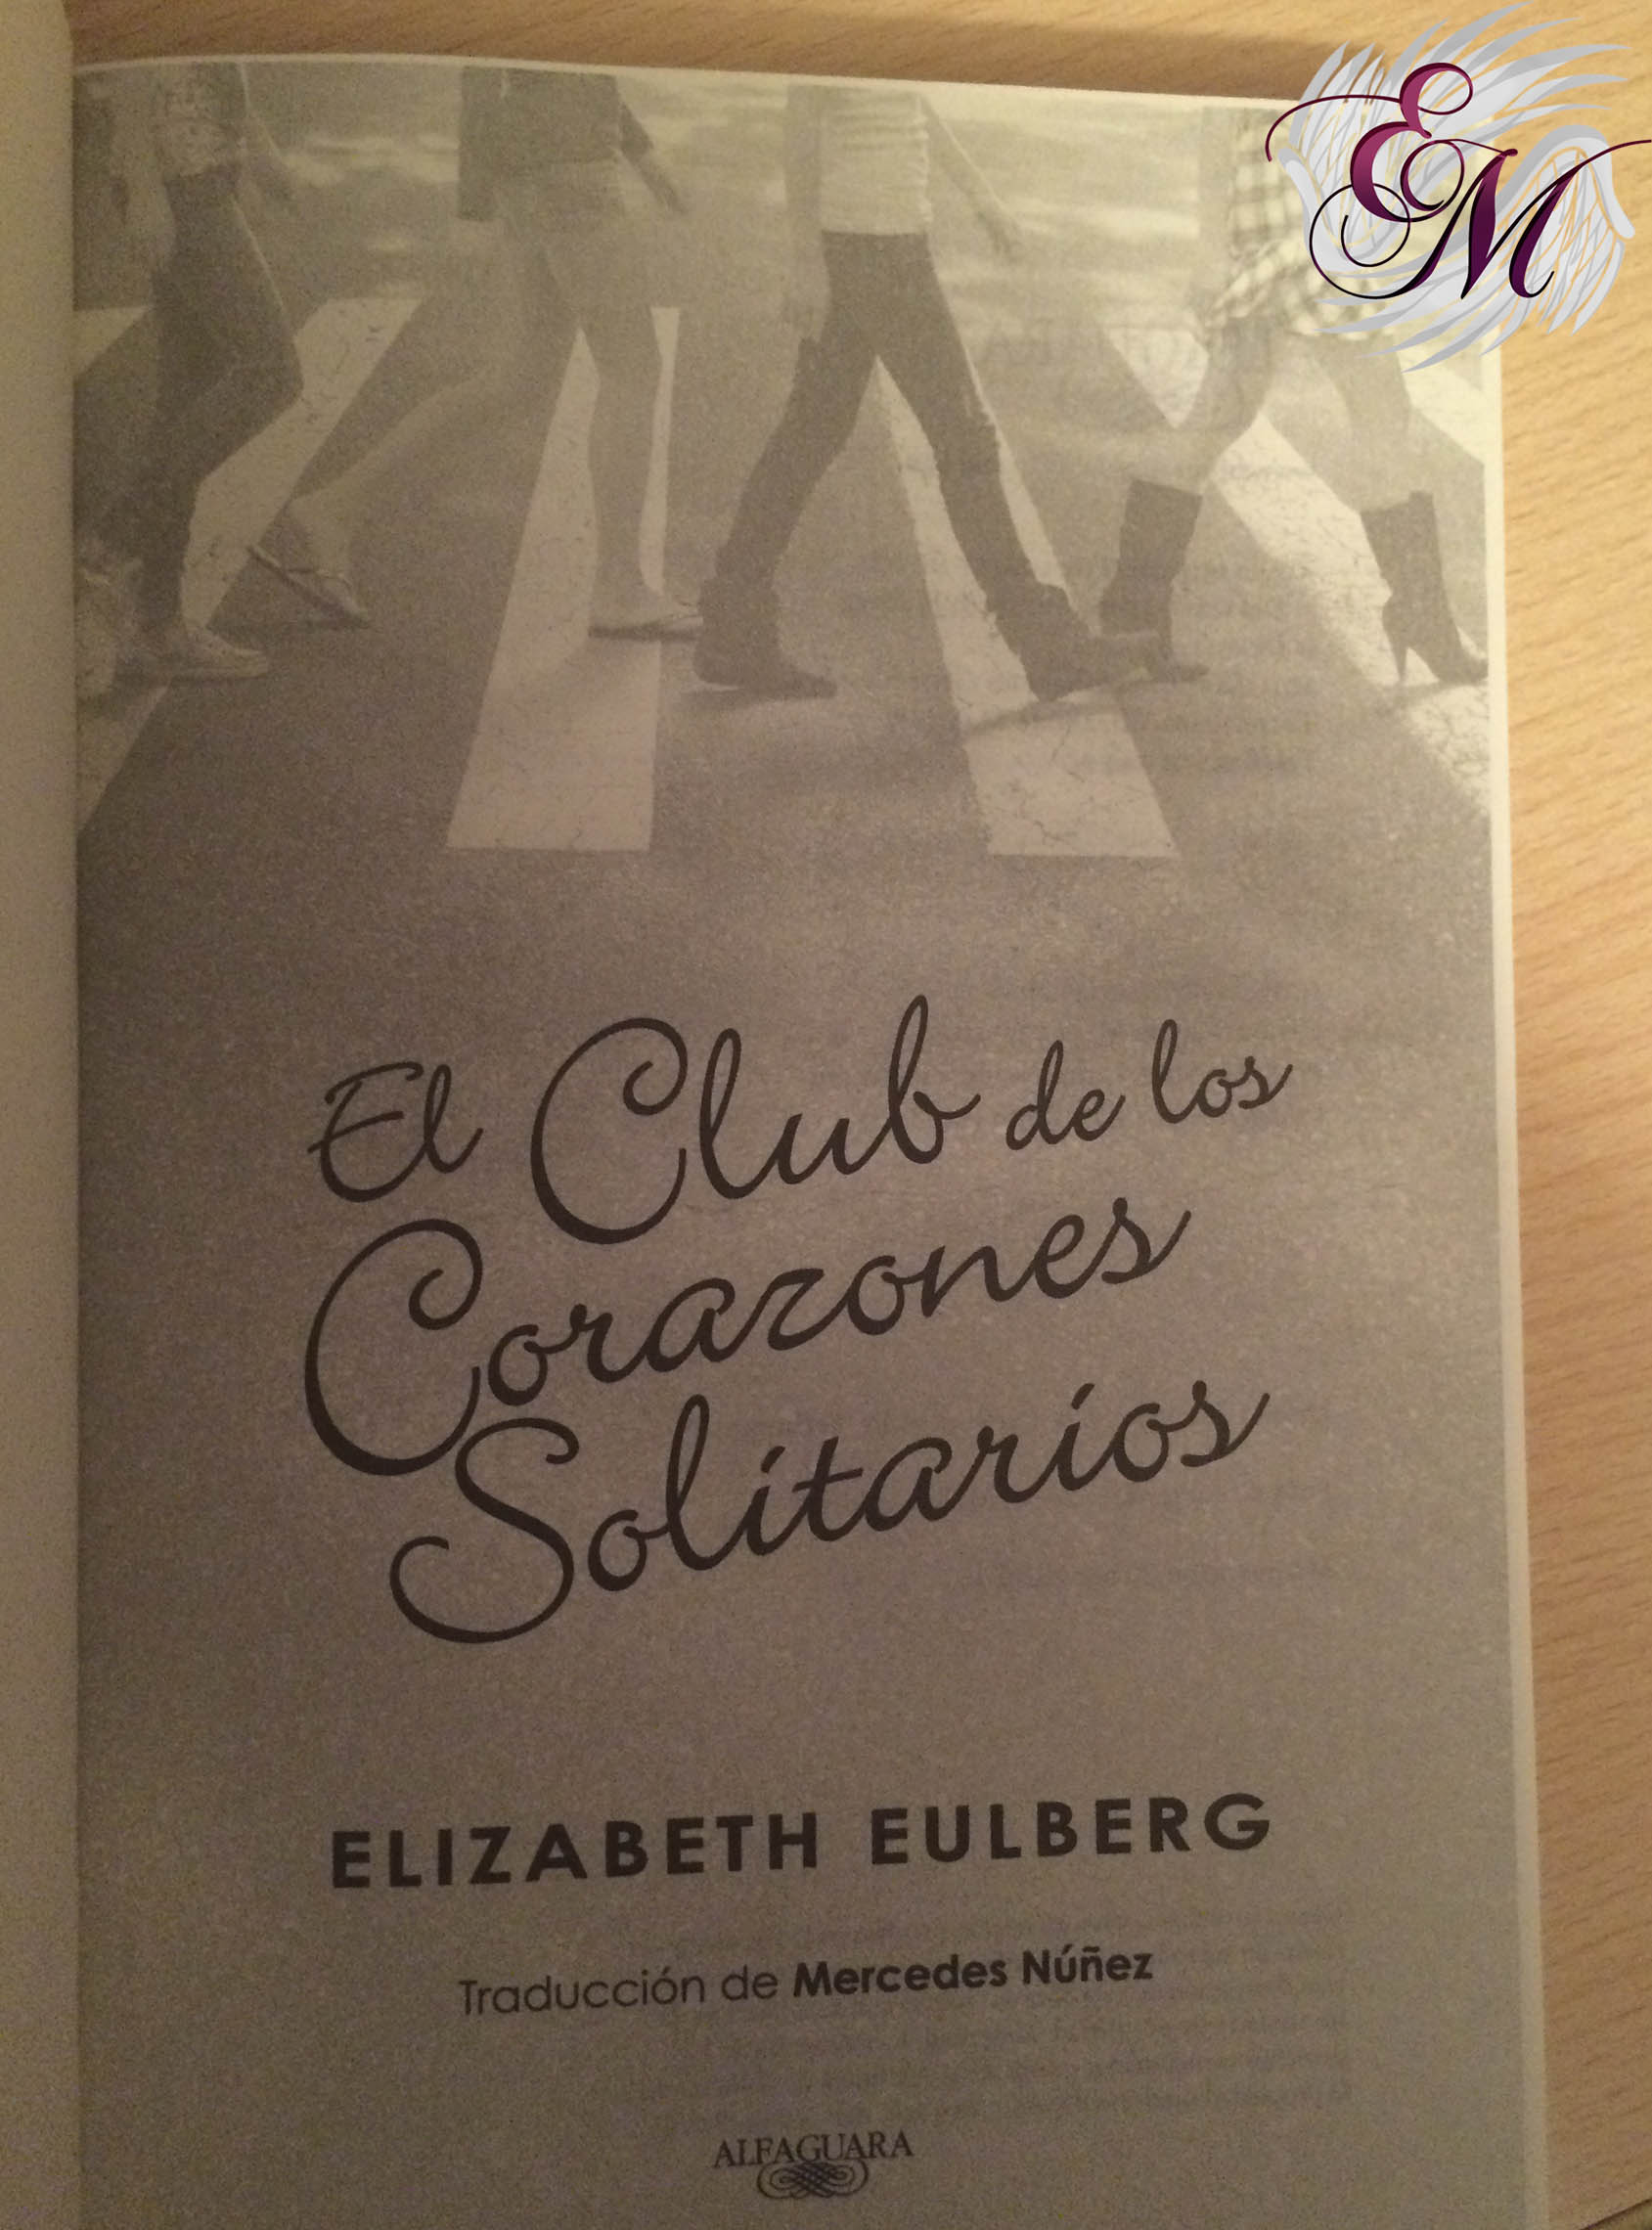 El club de los corazones solitarios, de Elizabeth Eulberg - Reseña